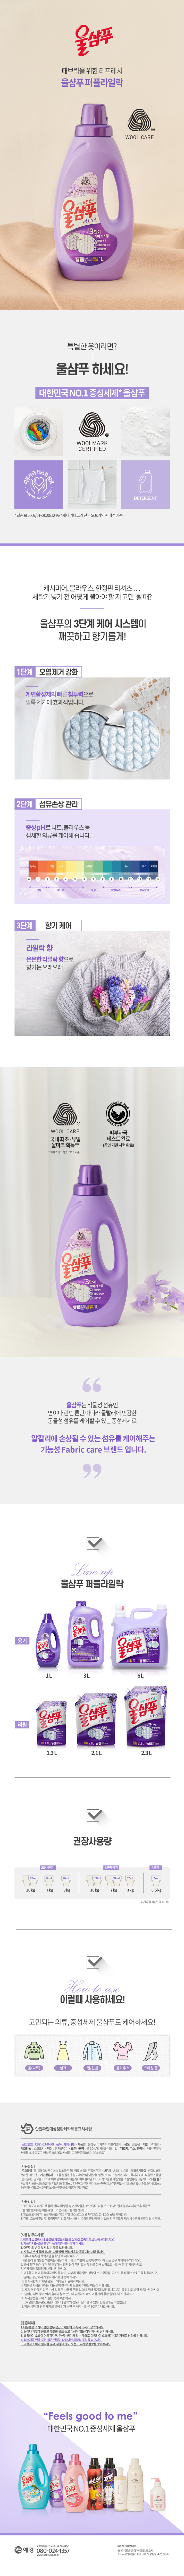 de_scent_detergent.jpg